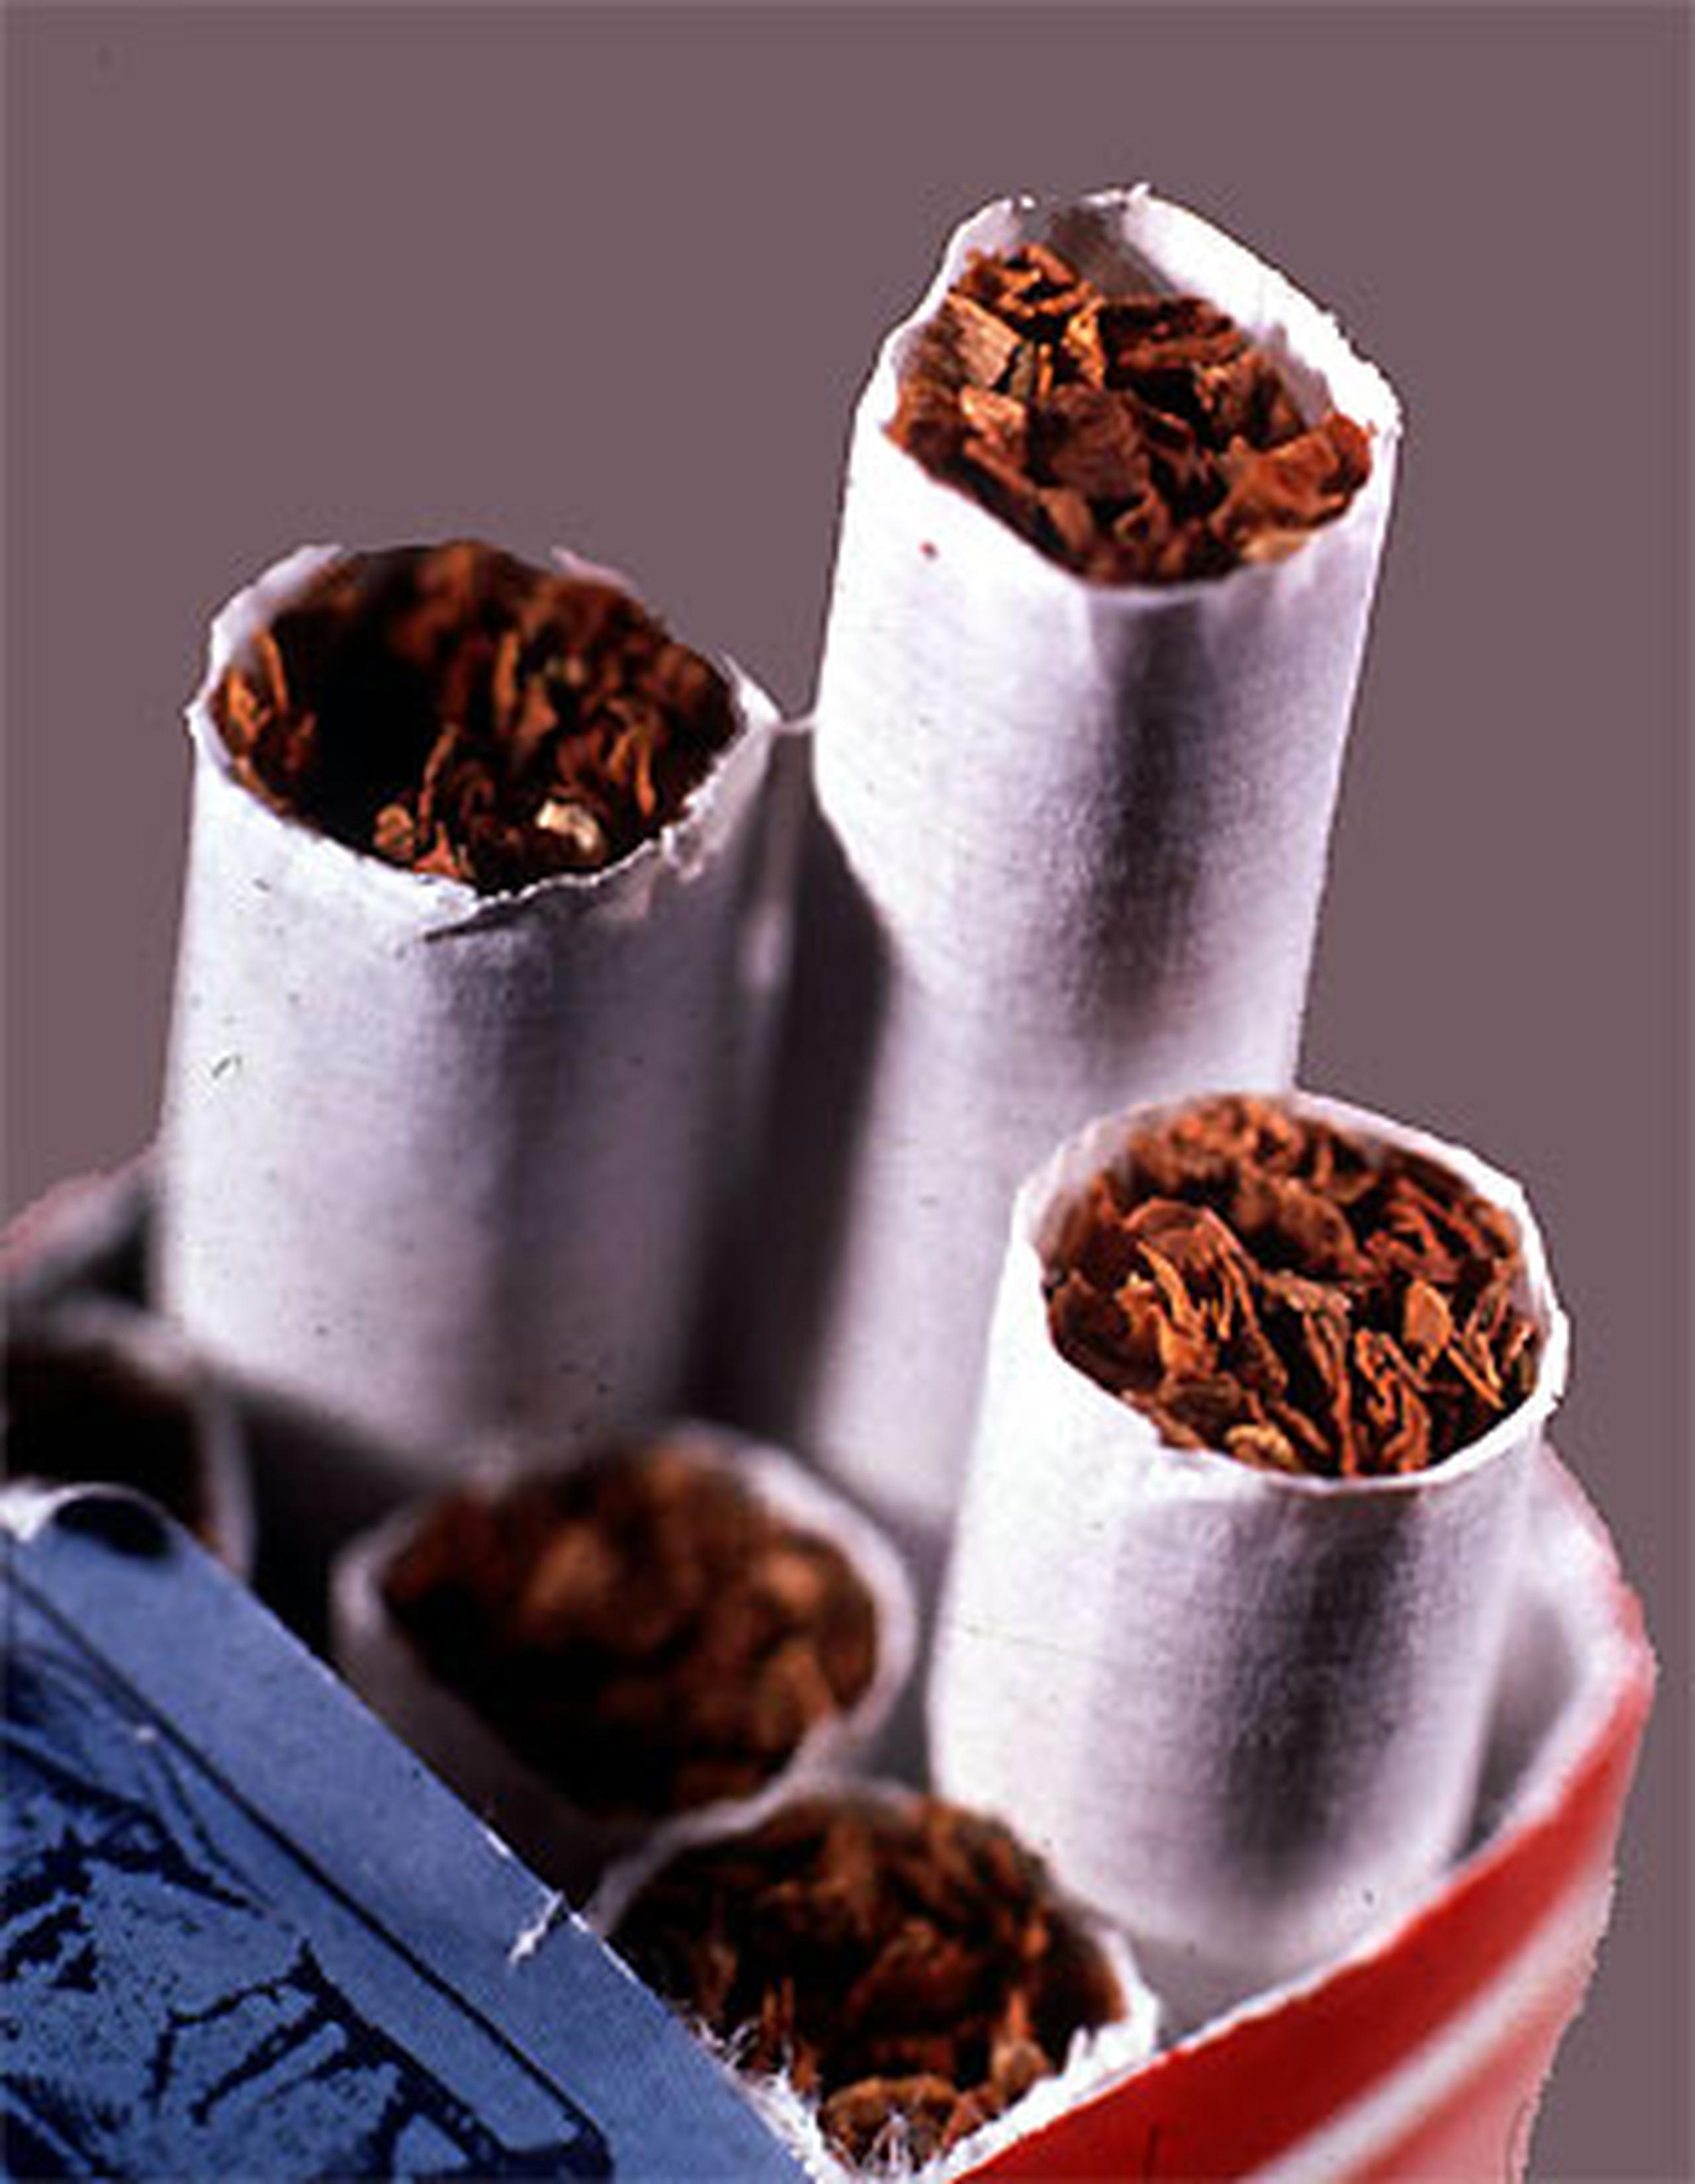 Más de 45 millones de estadounidenses fuman cigarrillos y cerca de la mitad intentan dejar el hábito cada año. (Archivo)